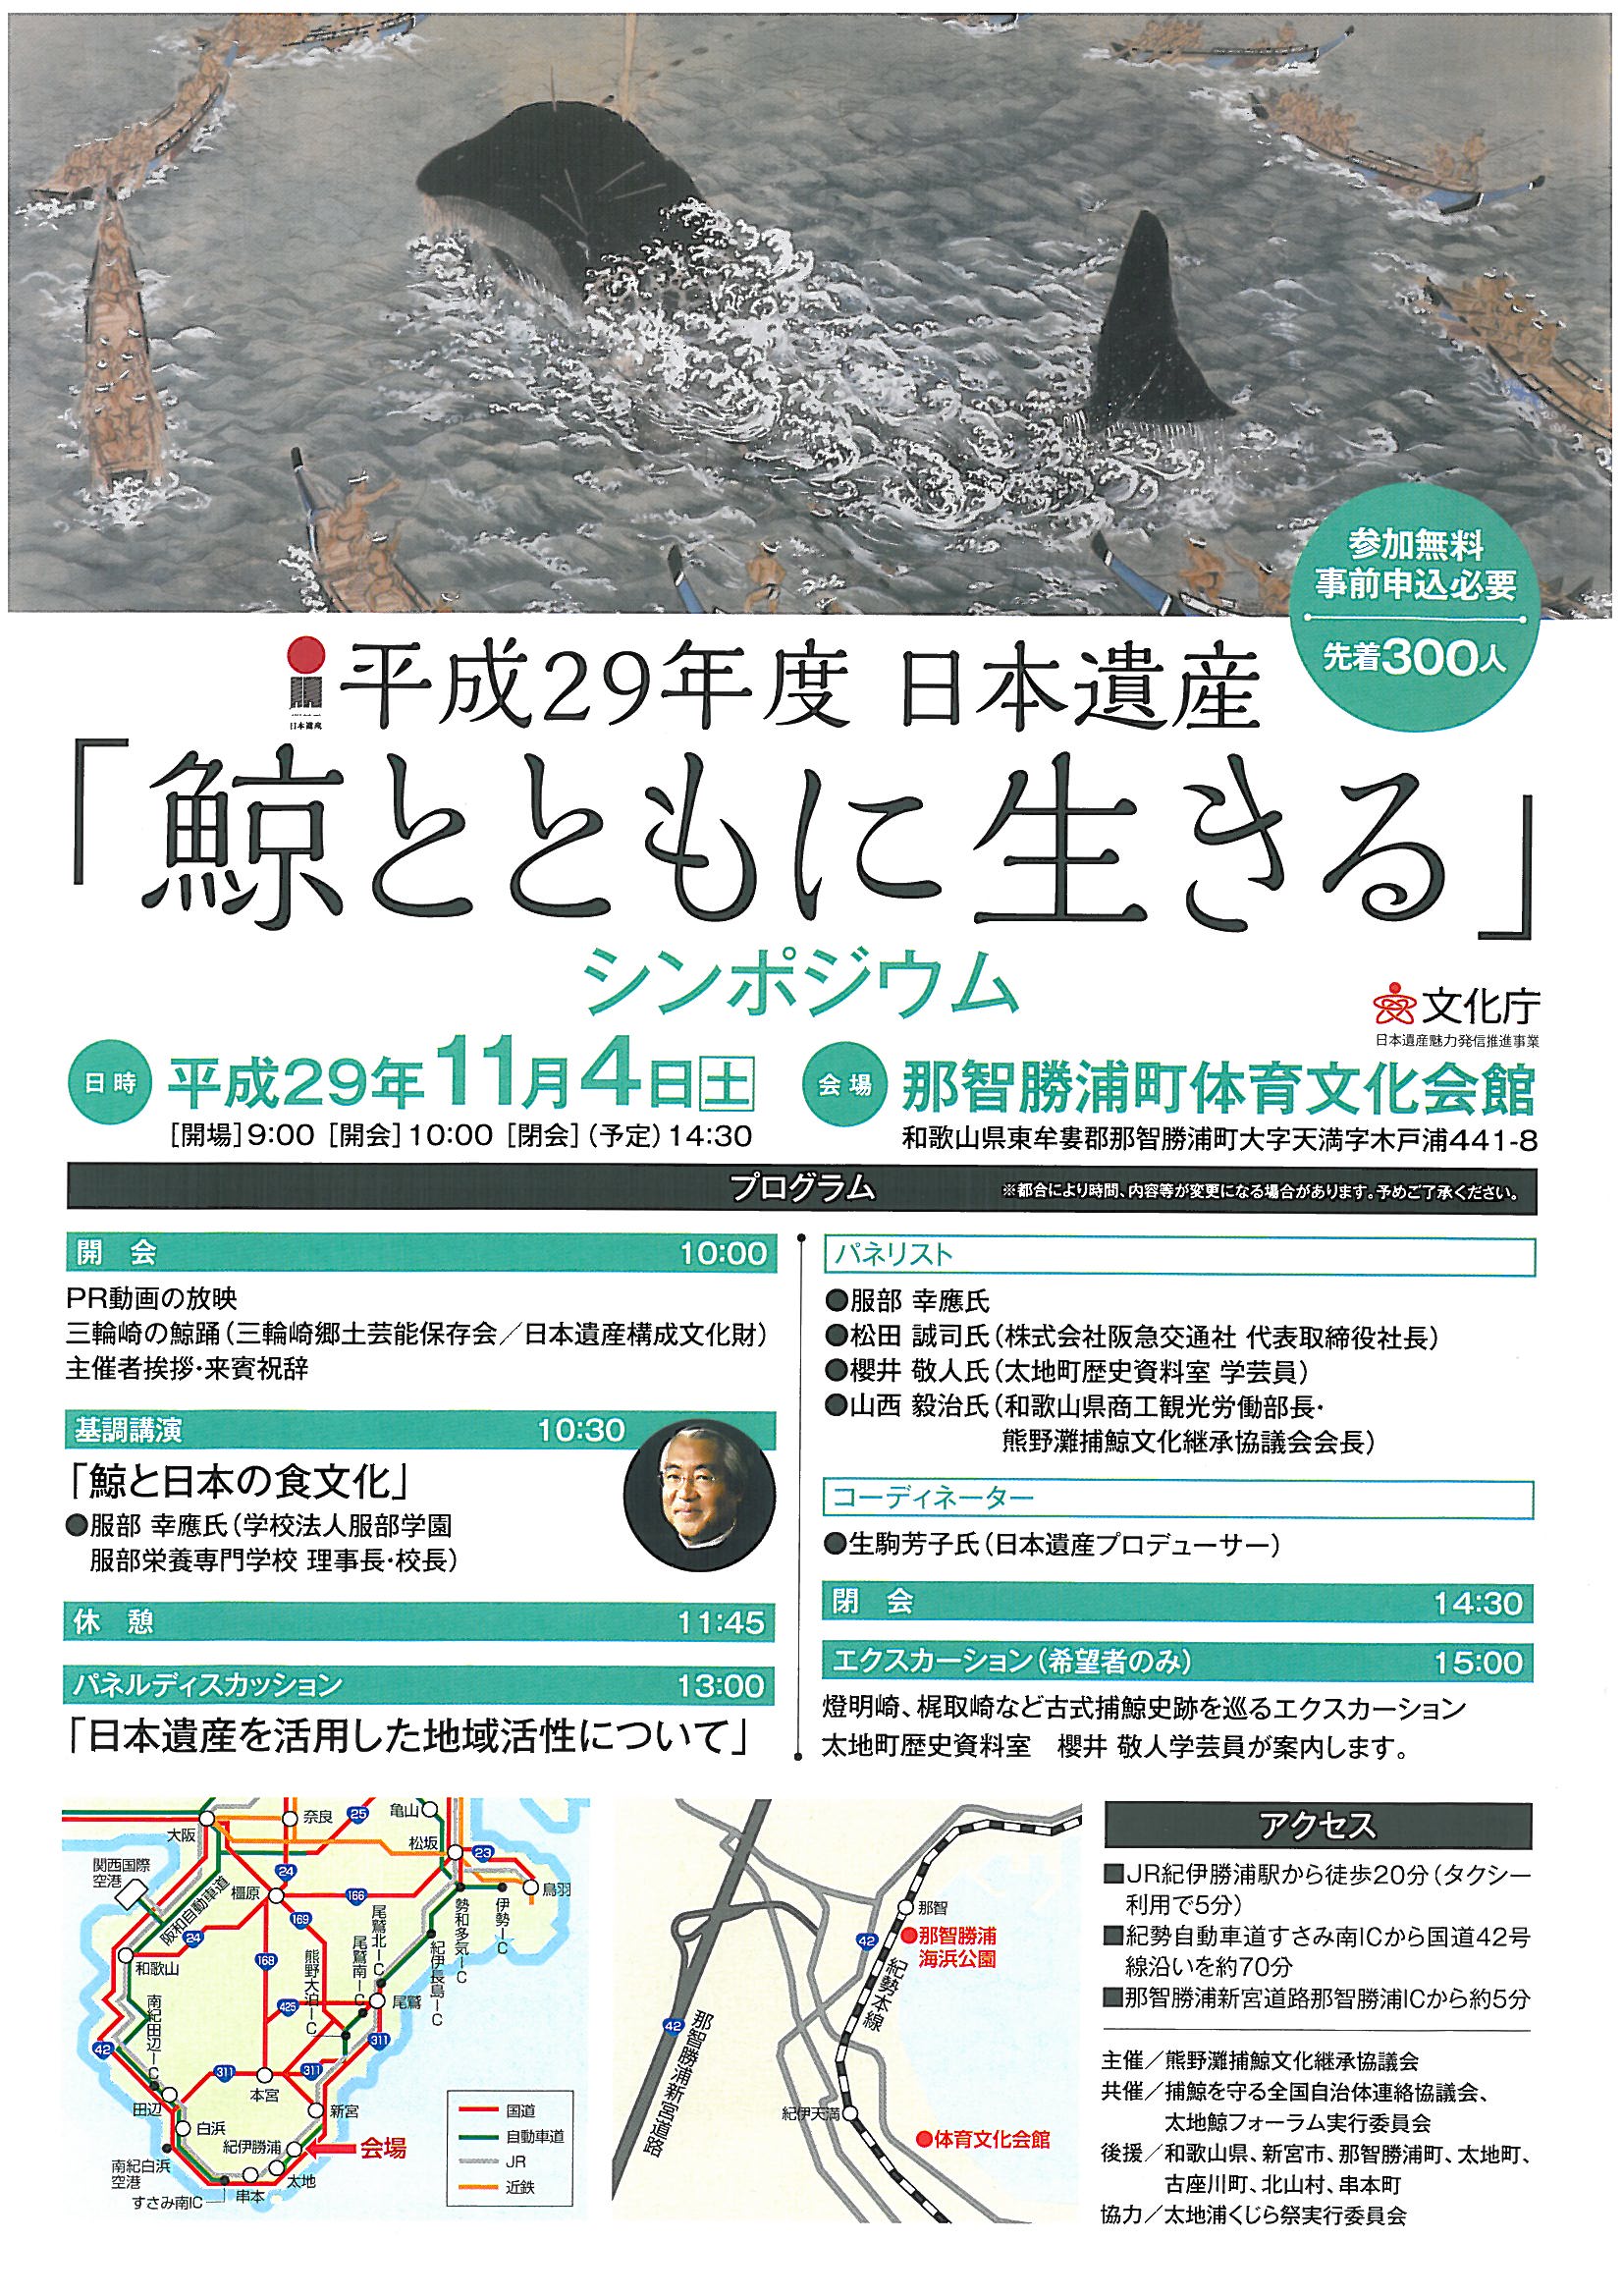 日本遺産「鯨とともに生きる」シンポジウムの開催について！